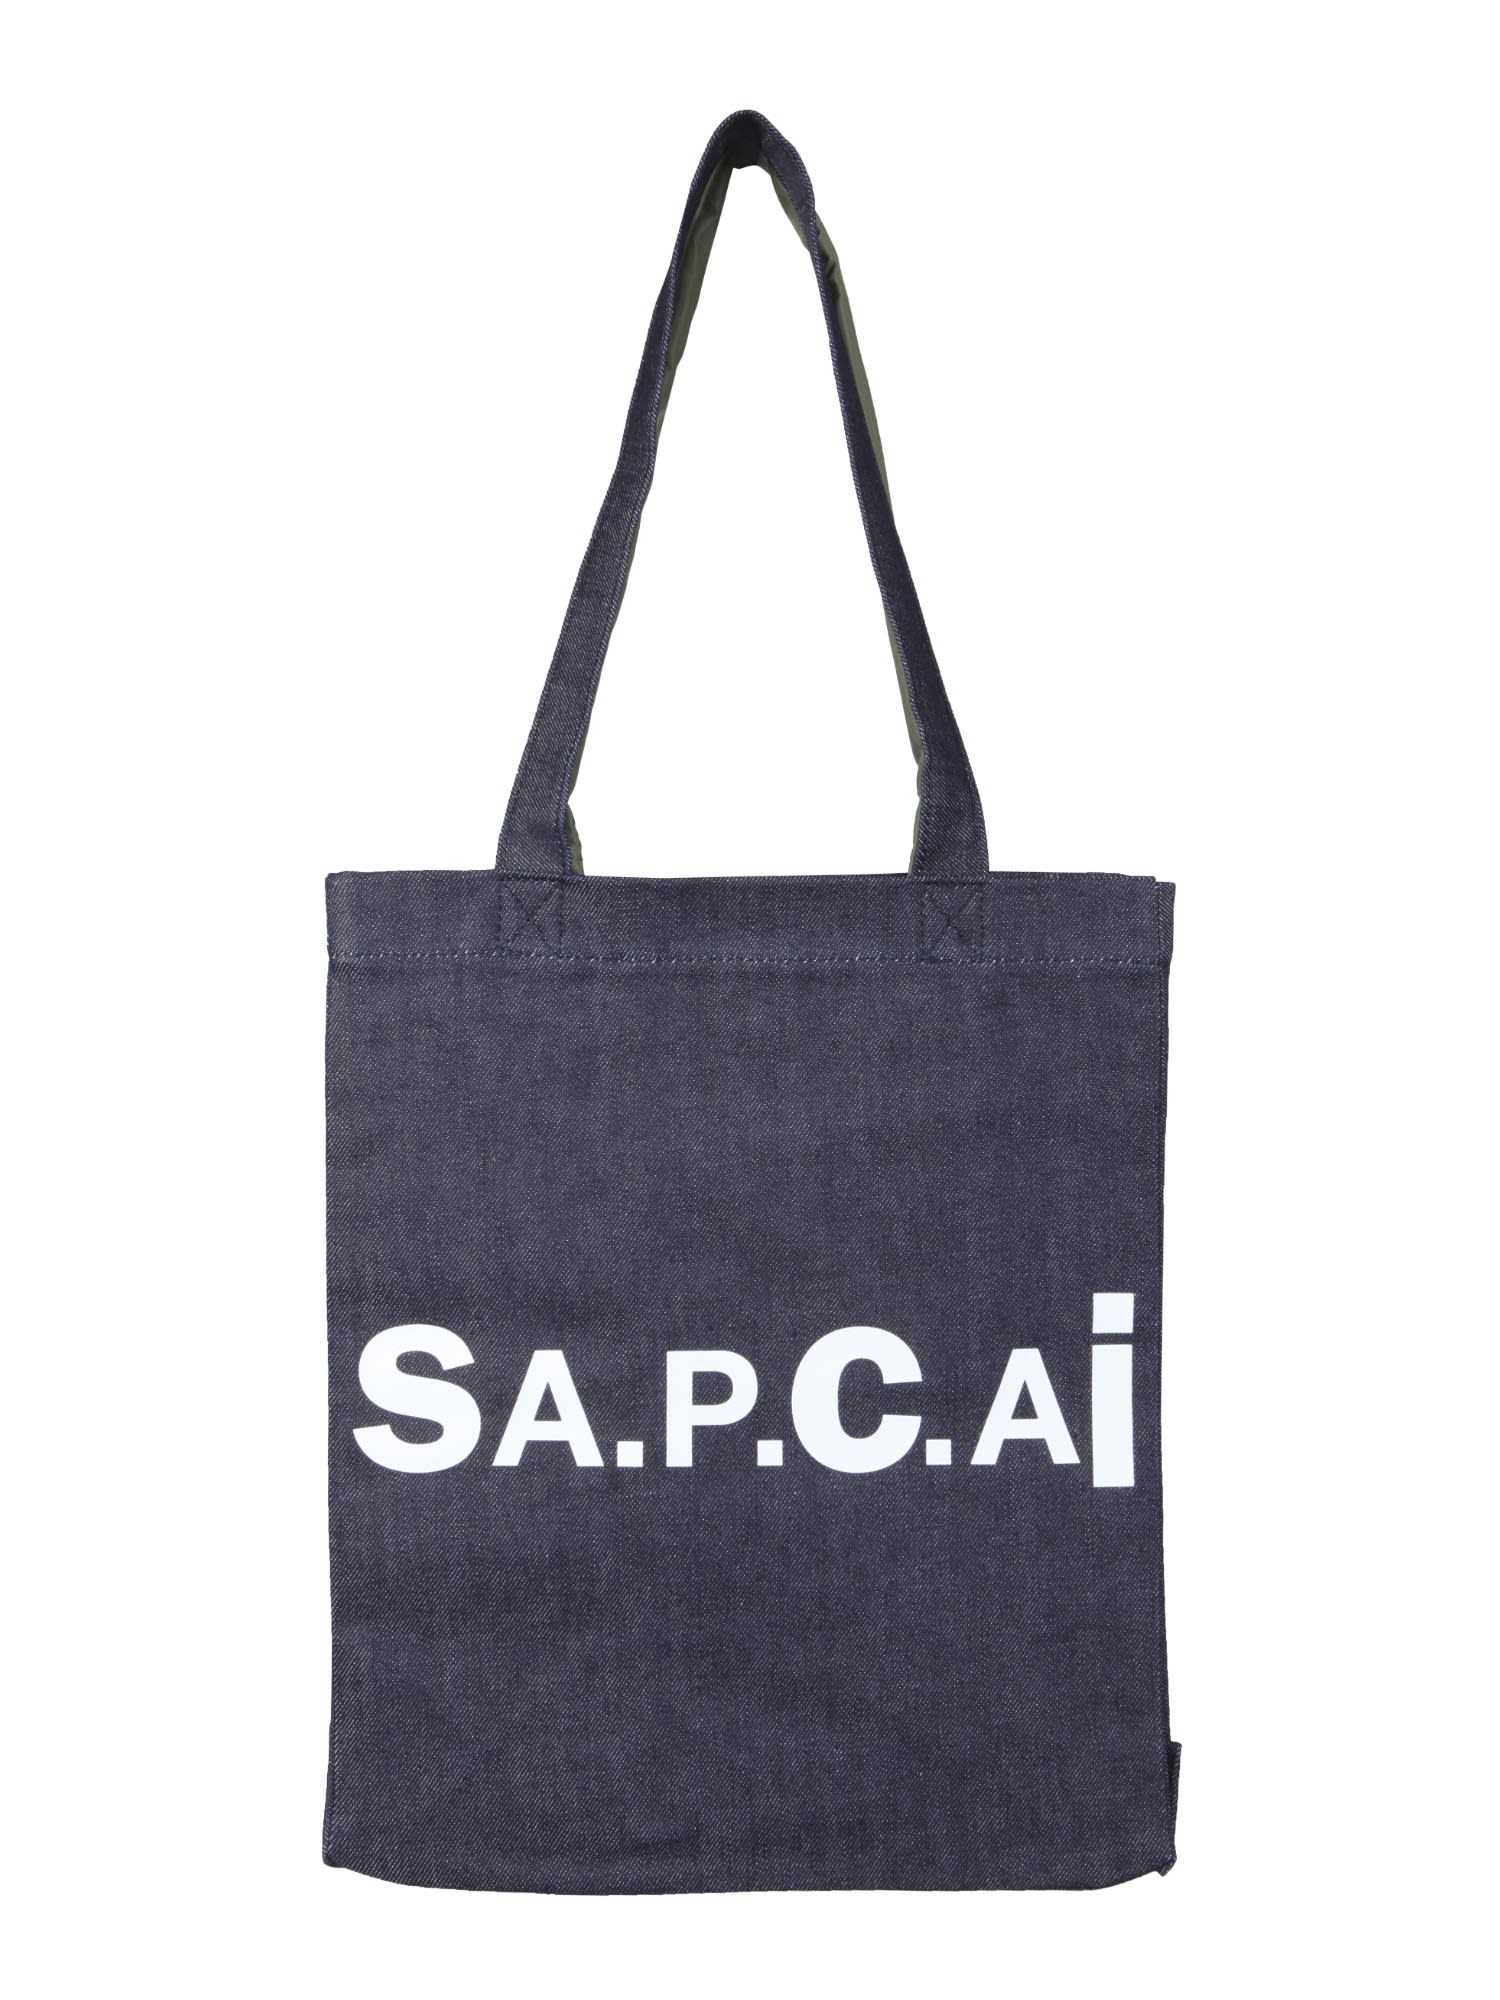 A.P.C. X SACAI HOLLY TOTE BAG,11884316